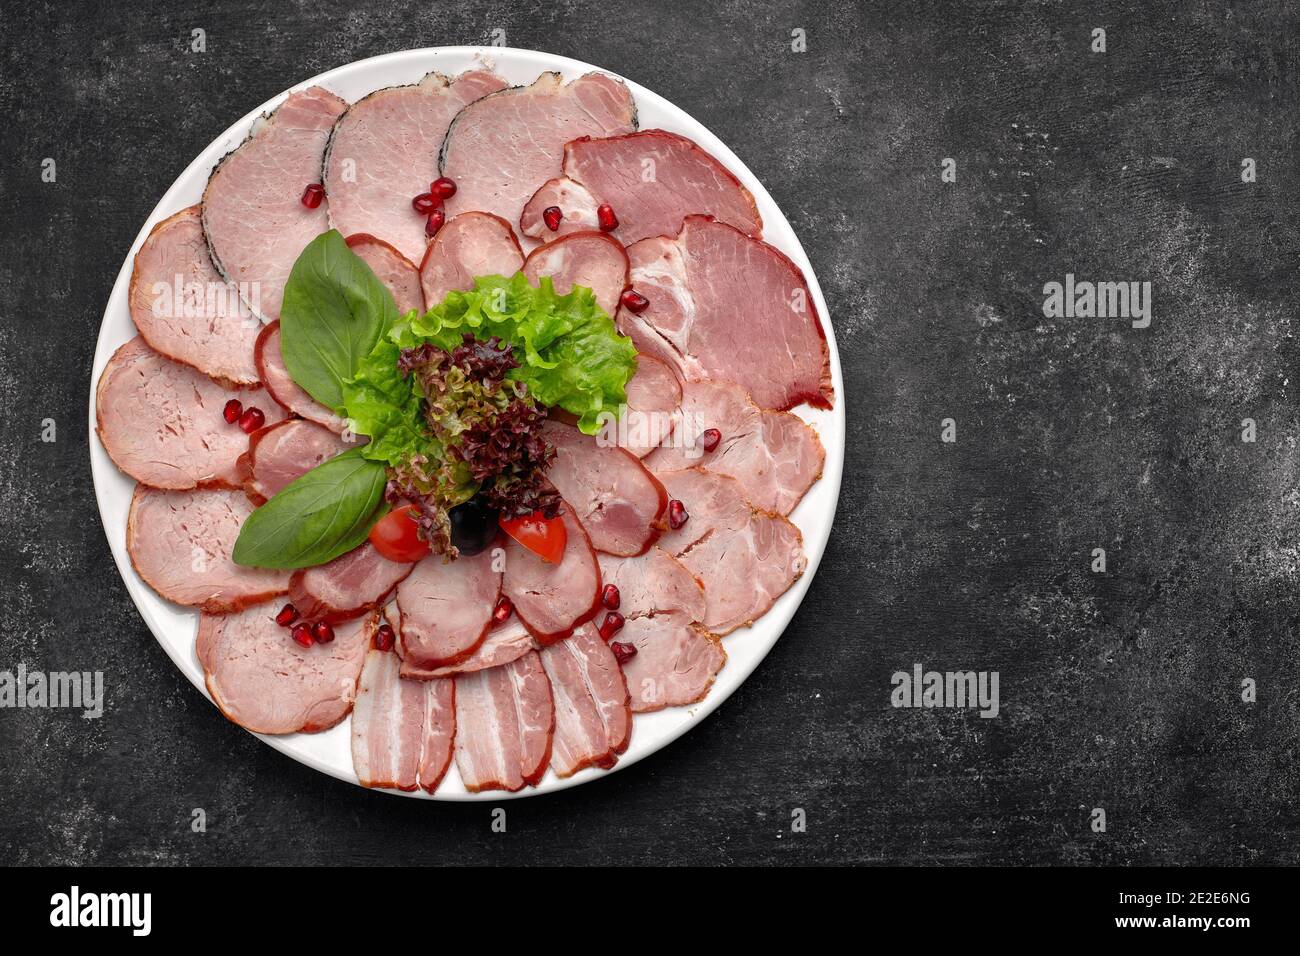 Aufschnitt in dünne Scheiben, Wurst, Speck, gekochtes Schweinefleisch,  Fleisch, mit Salat, Basilikum, Kirschtomaten und Granatapfelkernen, auf  einem weißen Teller Stockfotografie - Alamy